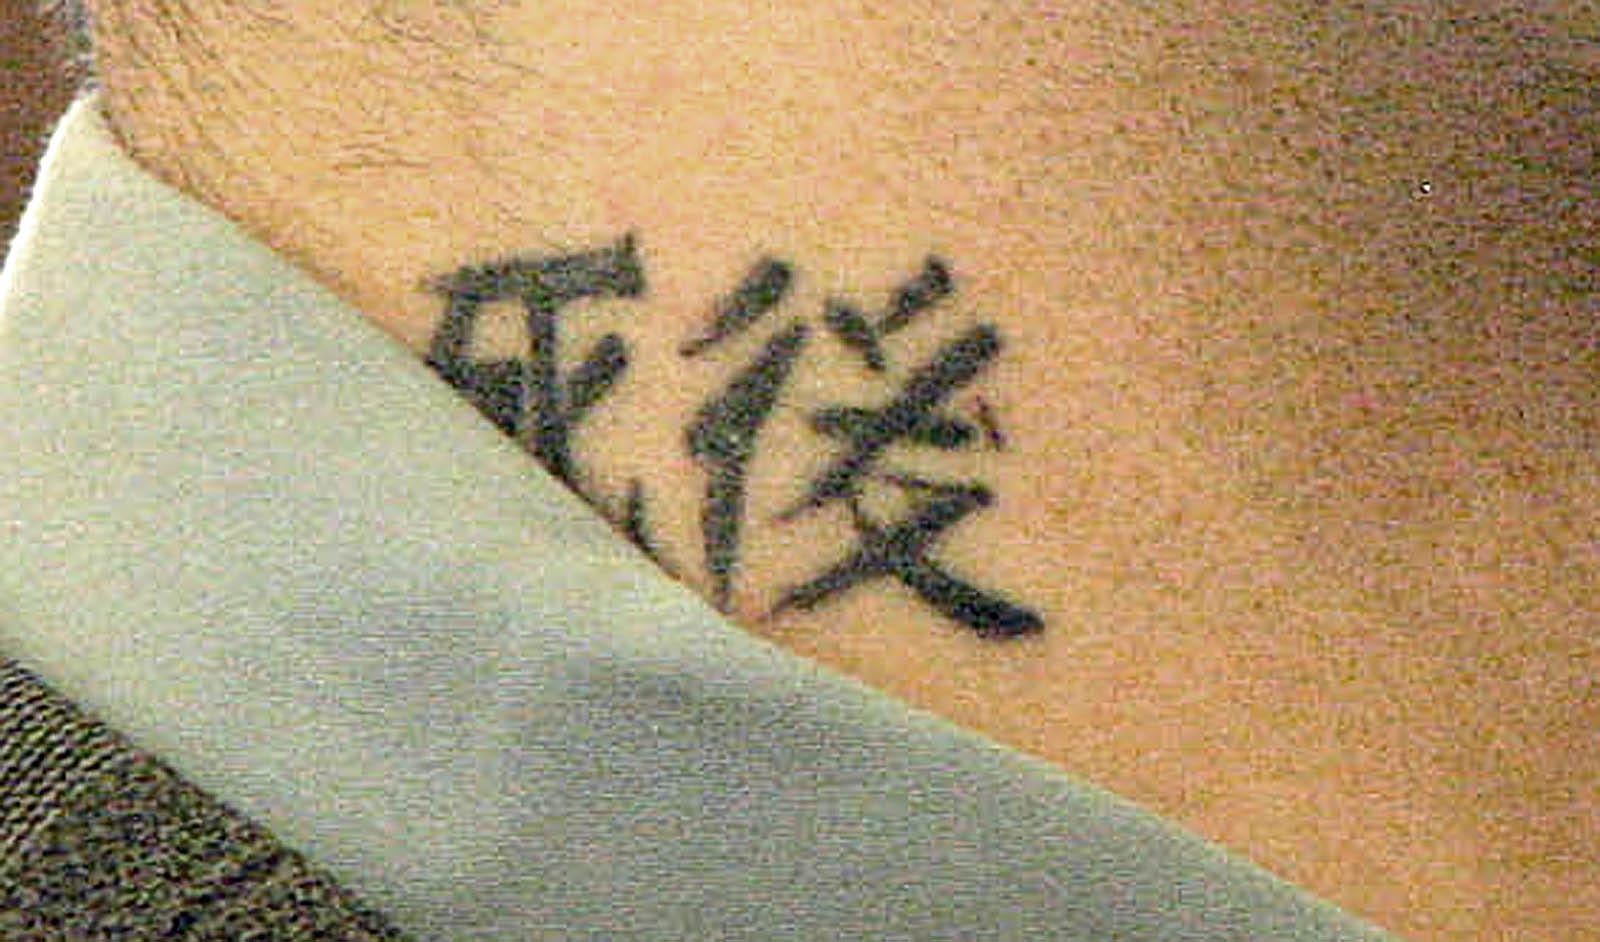 My new kanji tattoo by MyXFuckingXRomance on DeviantArt